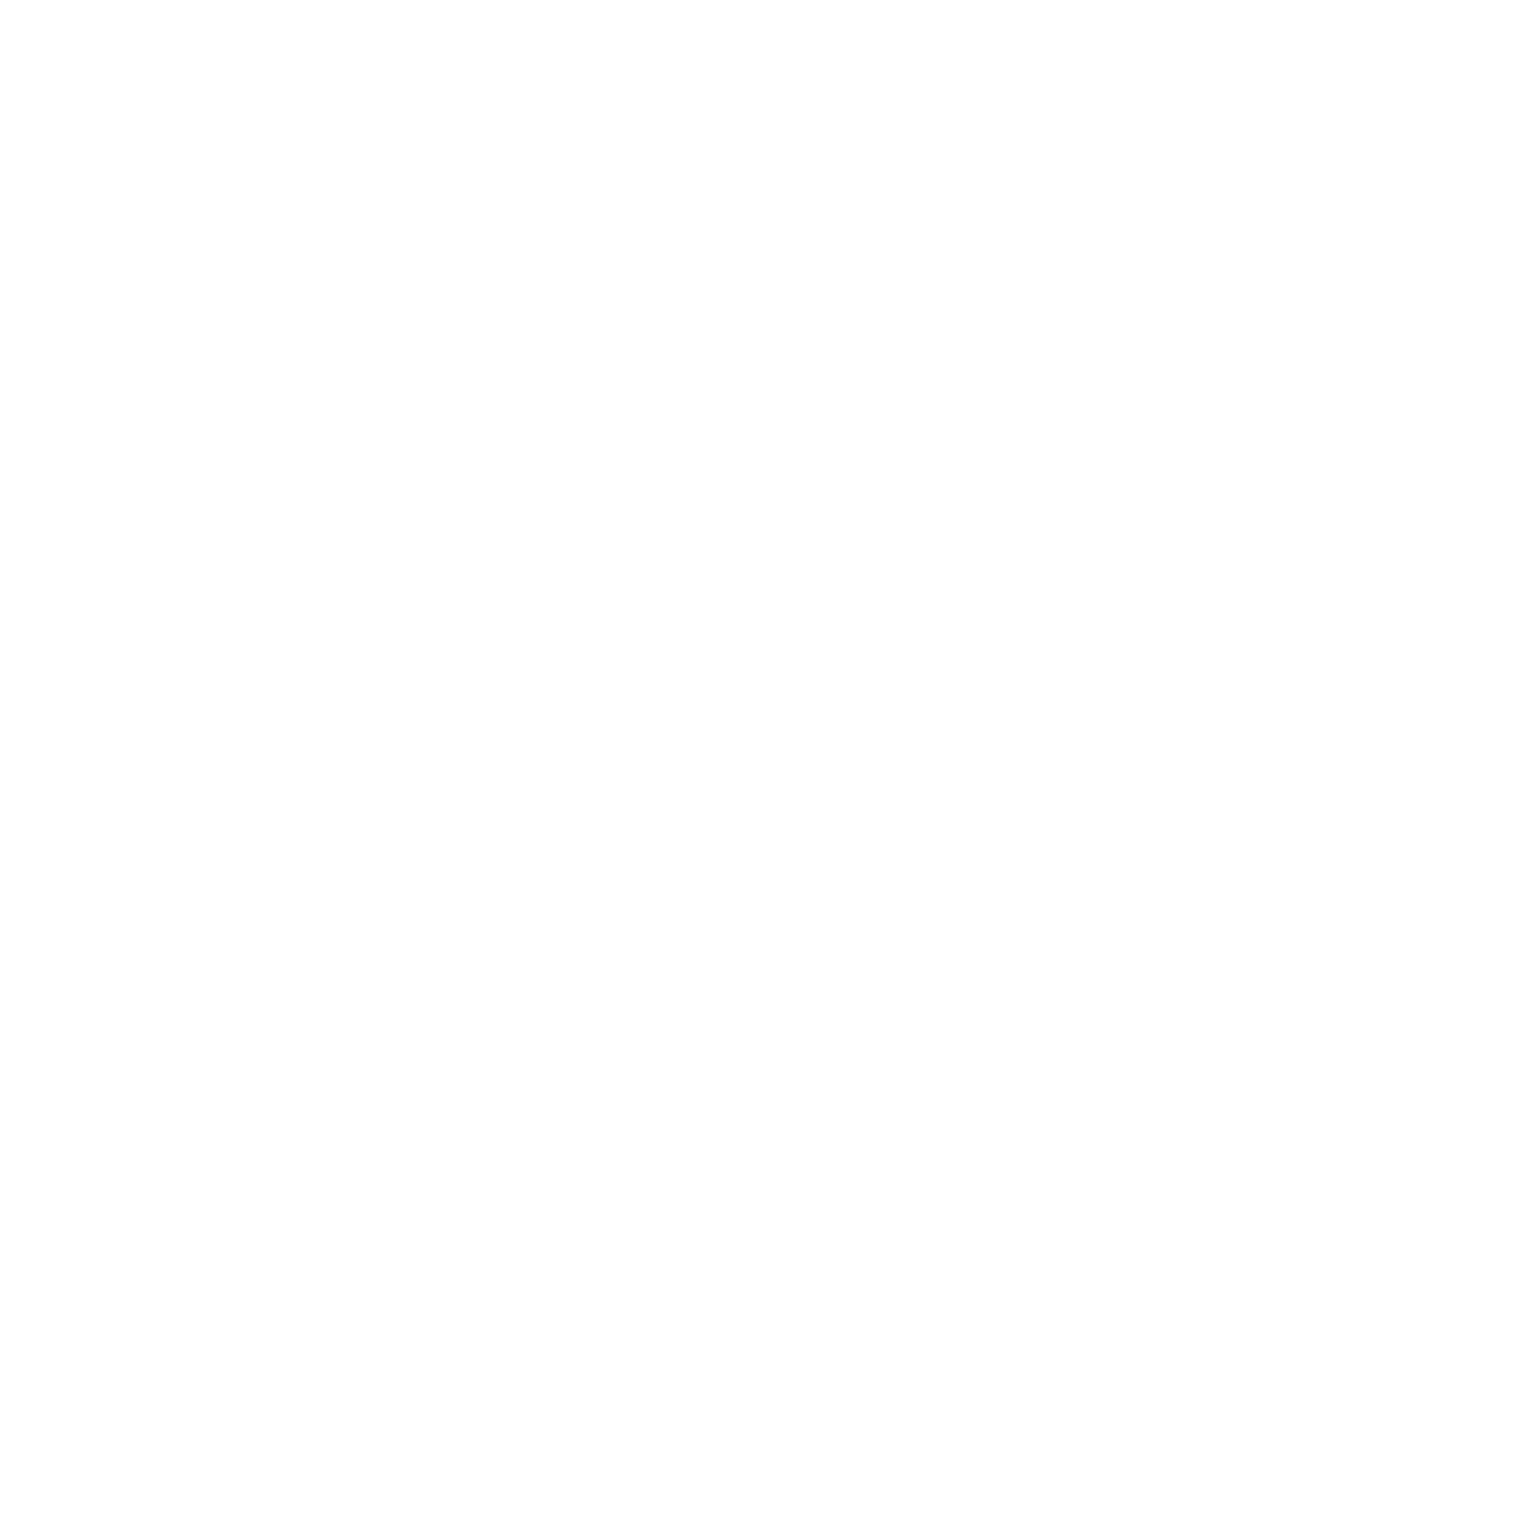 DEUTZ logo large for dark backgrounds (transparent PNG)